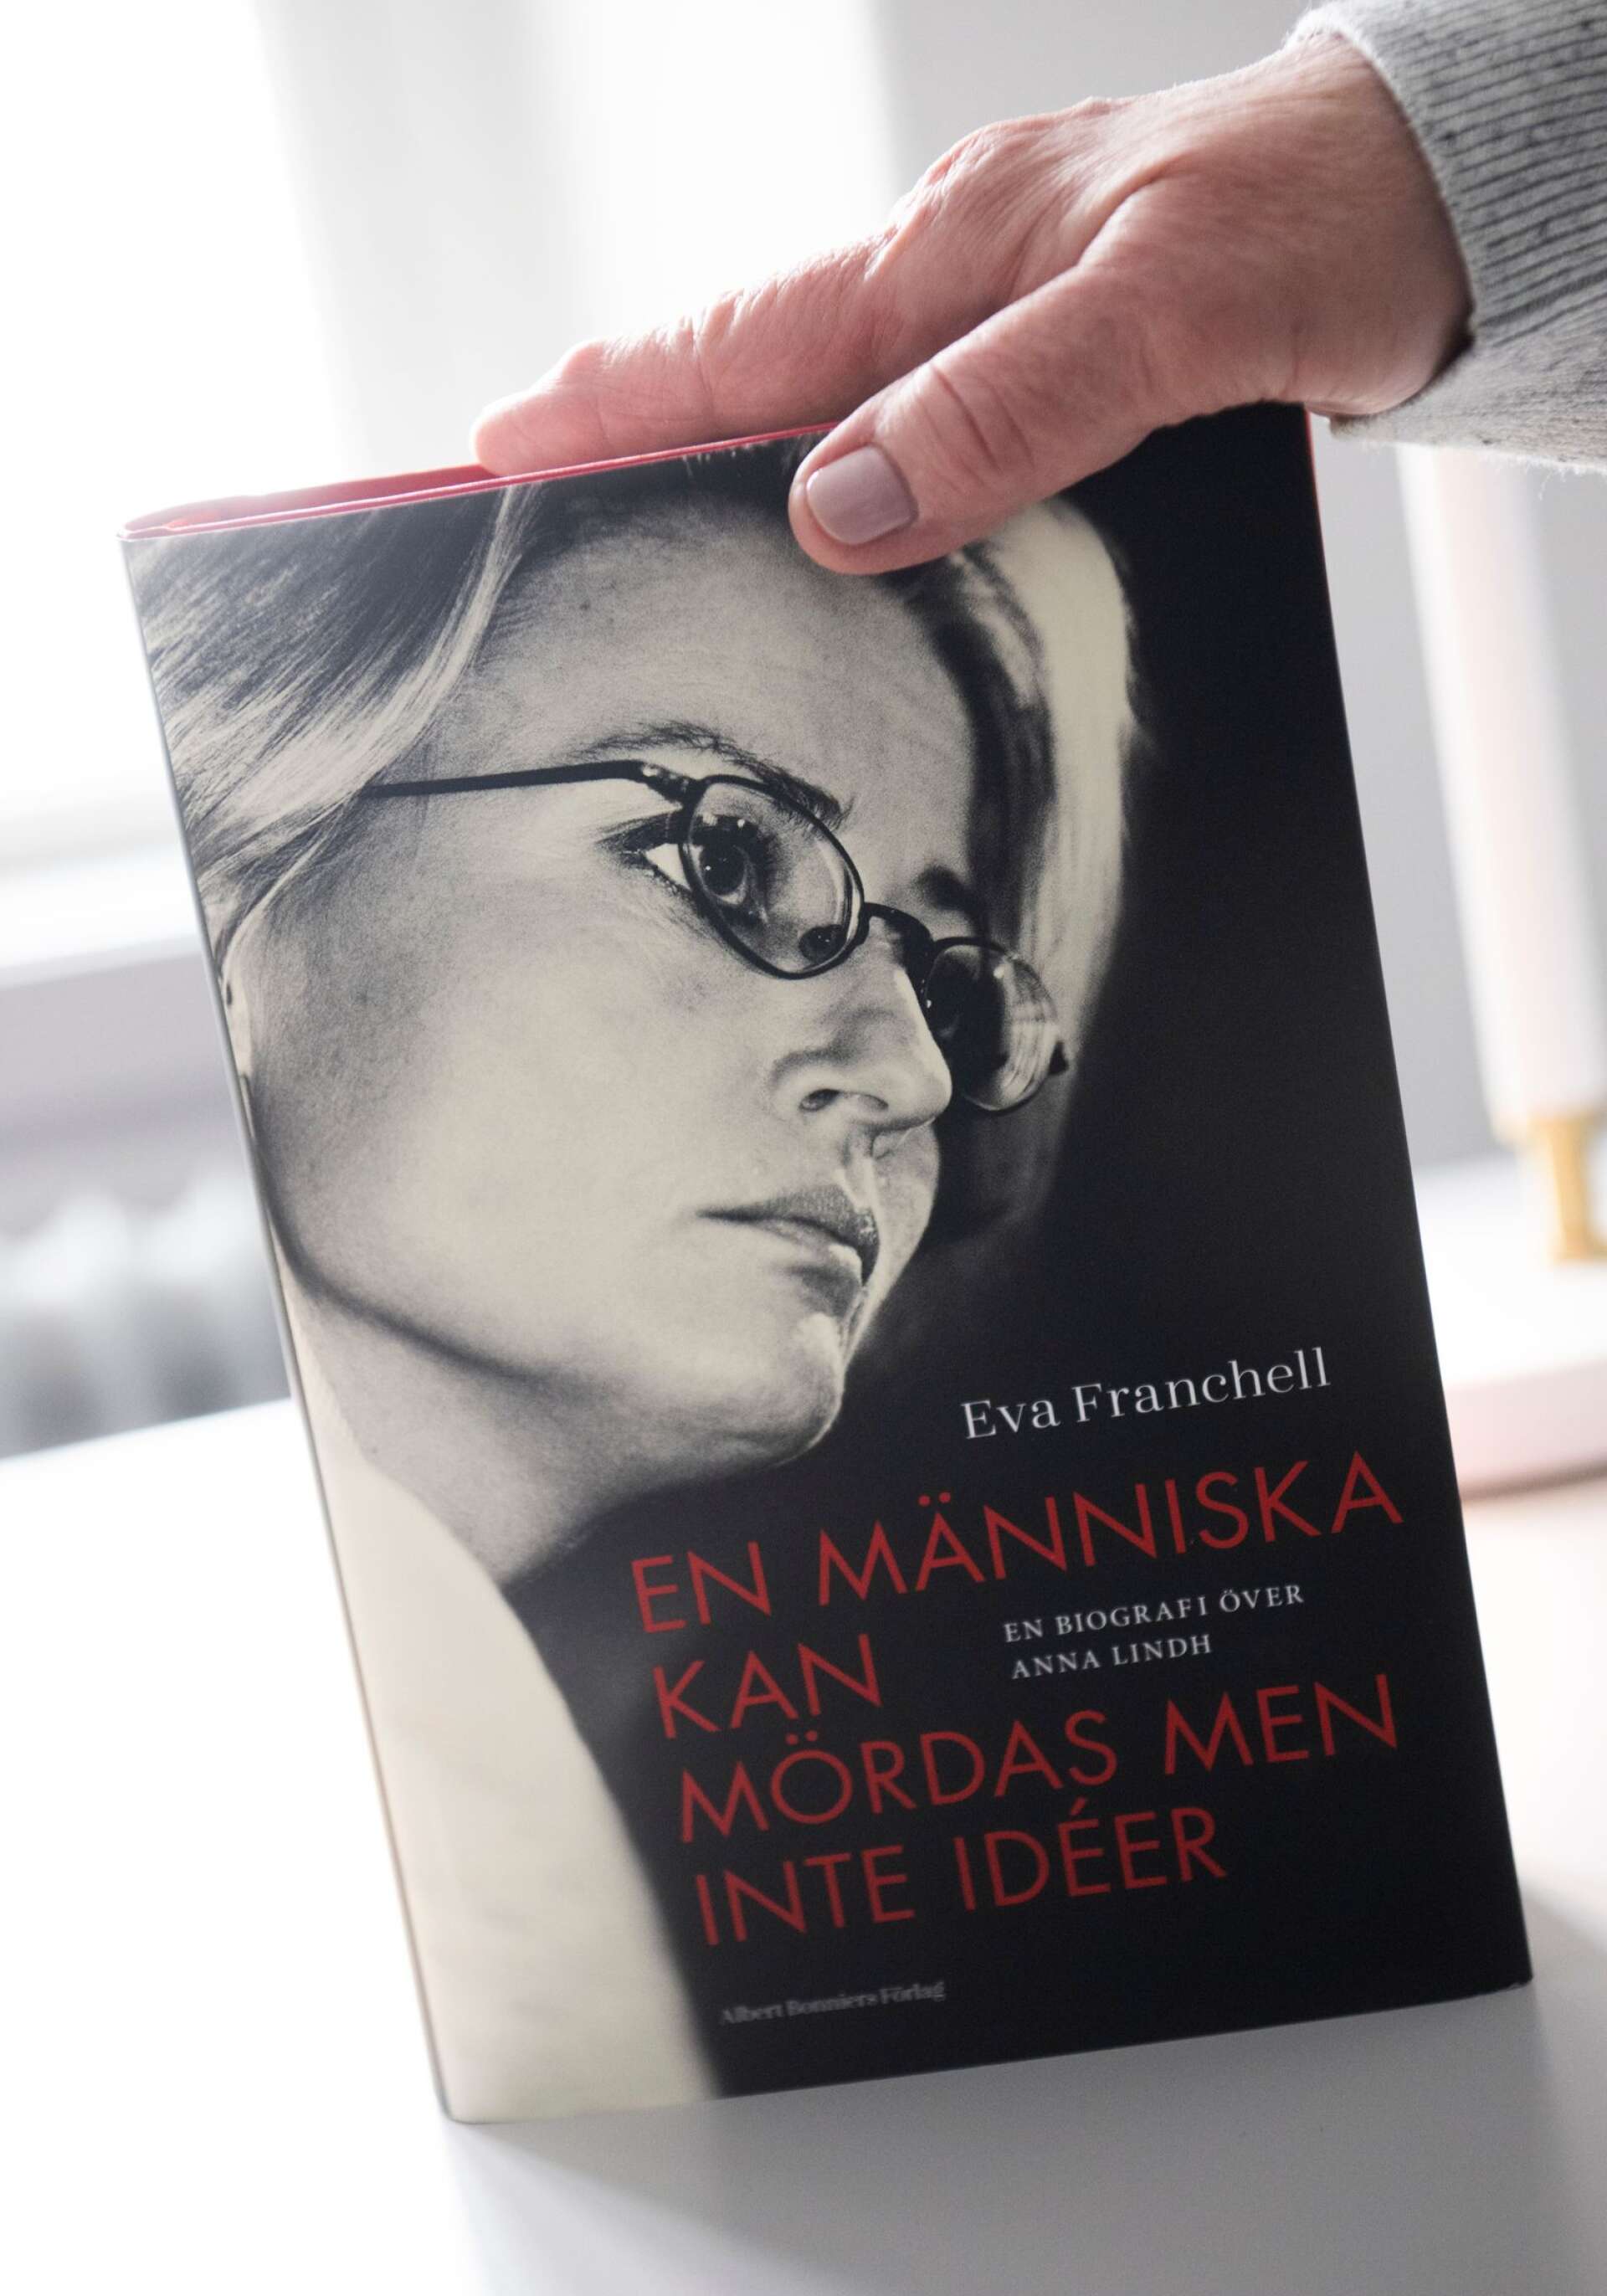 Eva Franchell har nyligen kommit ut med en biografi om Anna Lindh. ”Den här berättelsen fattades”, säger hon.